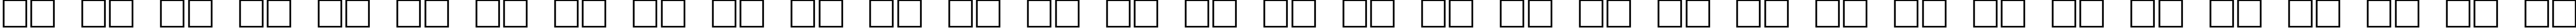 Пример написания русского алфавита шрифтом DG_Serpentine